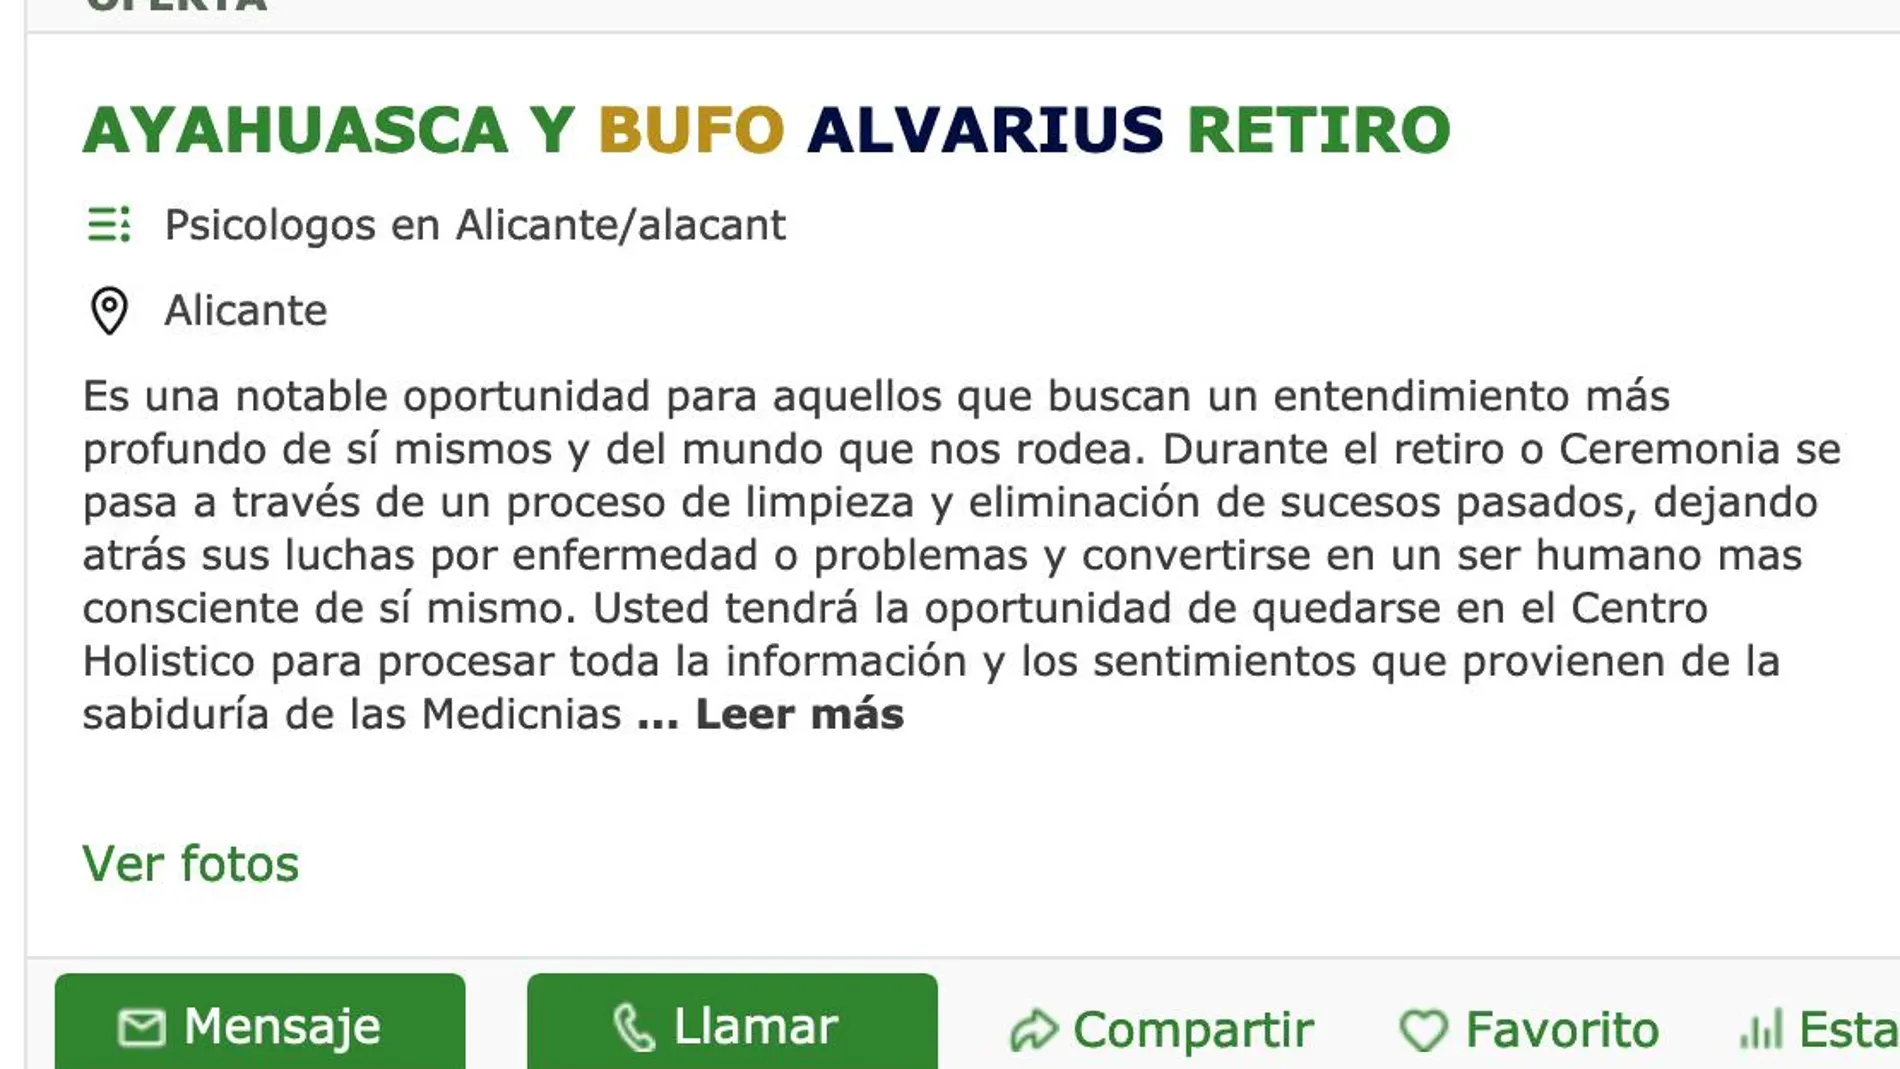 Uno de los numerosos anuncios que proliferan en Internet ofreciendo la ayahuasca del sapo bufo